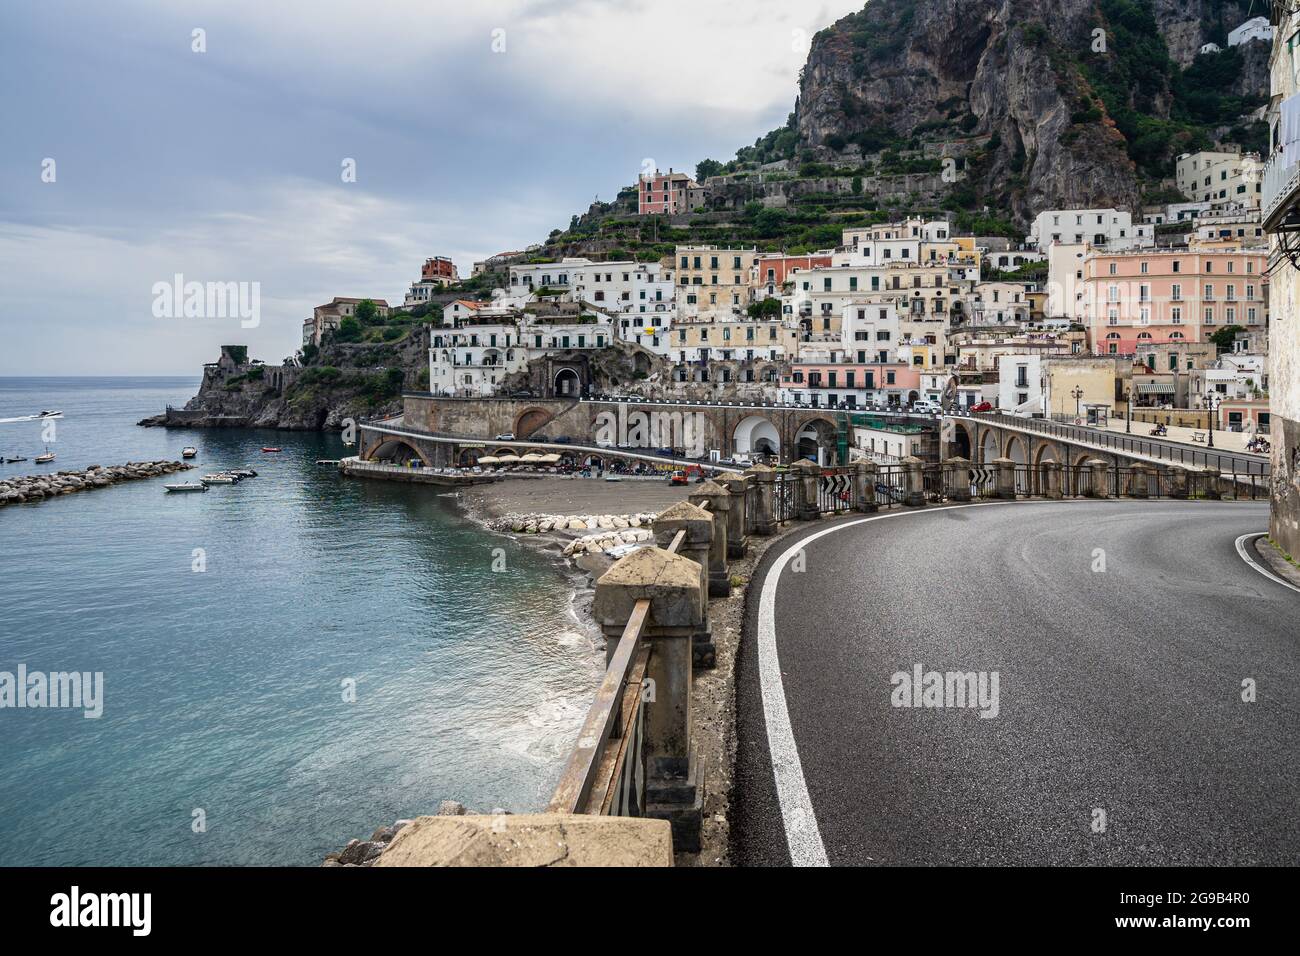 Route panoramique sur la côte amalfitaine dans la petite ville d'Atrani, Italie Banque D'Images